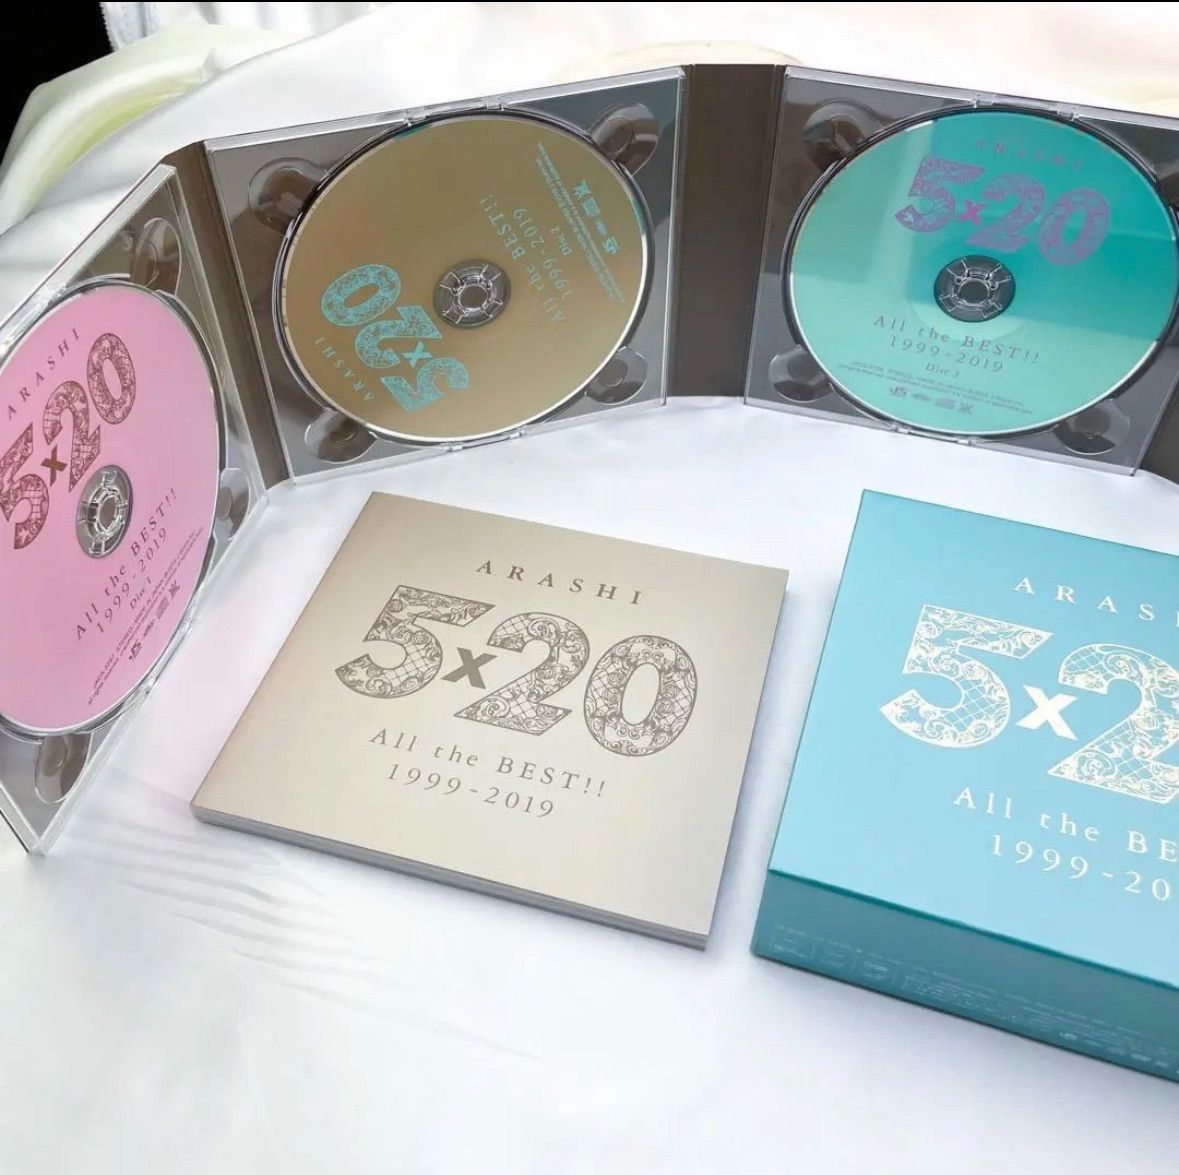 嵐5×20 All the BEST!! 1999-2019 初回限定盤 1.2 - 邦楽